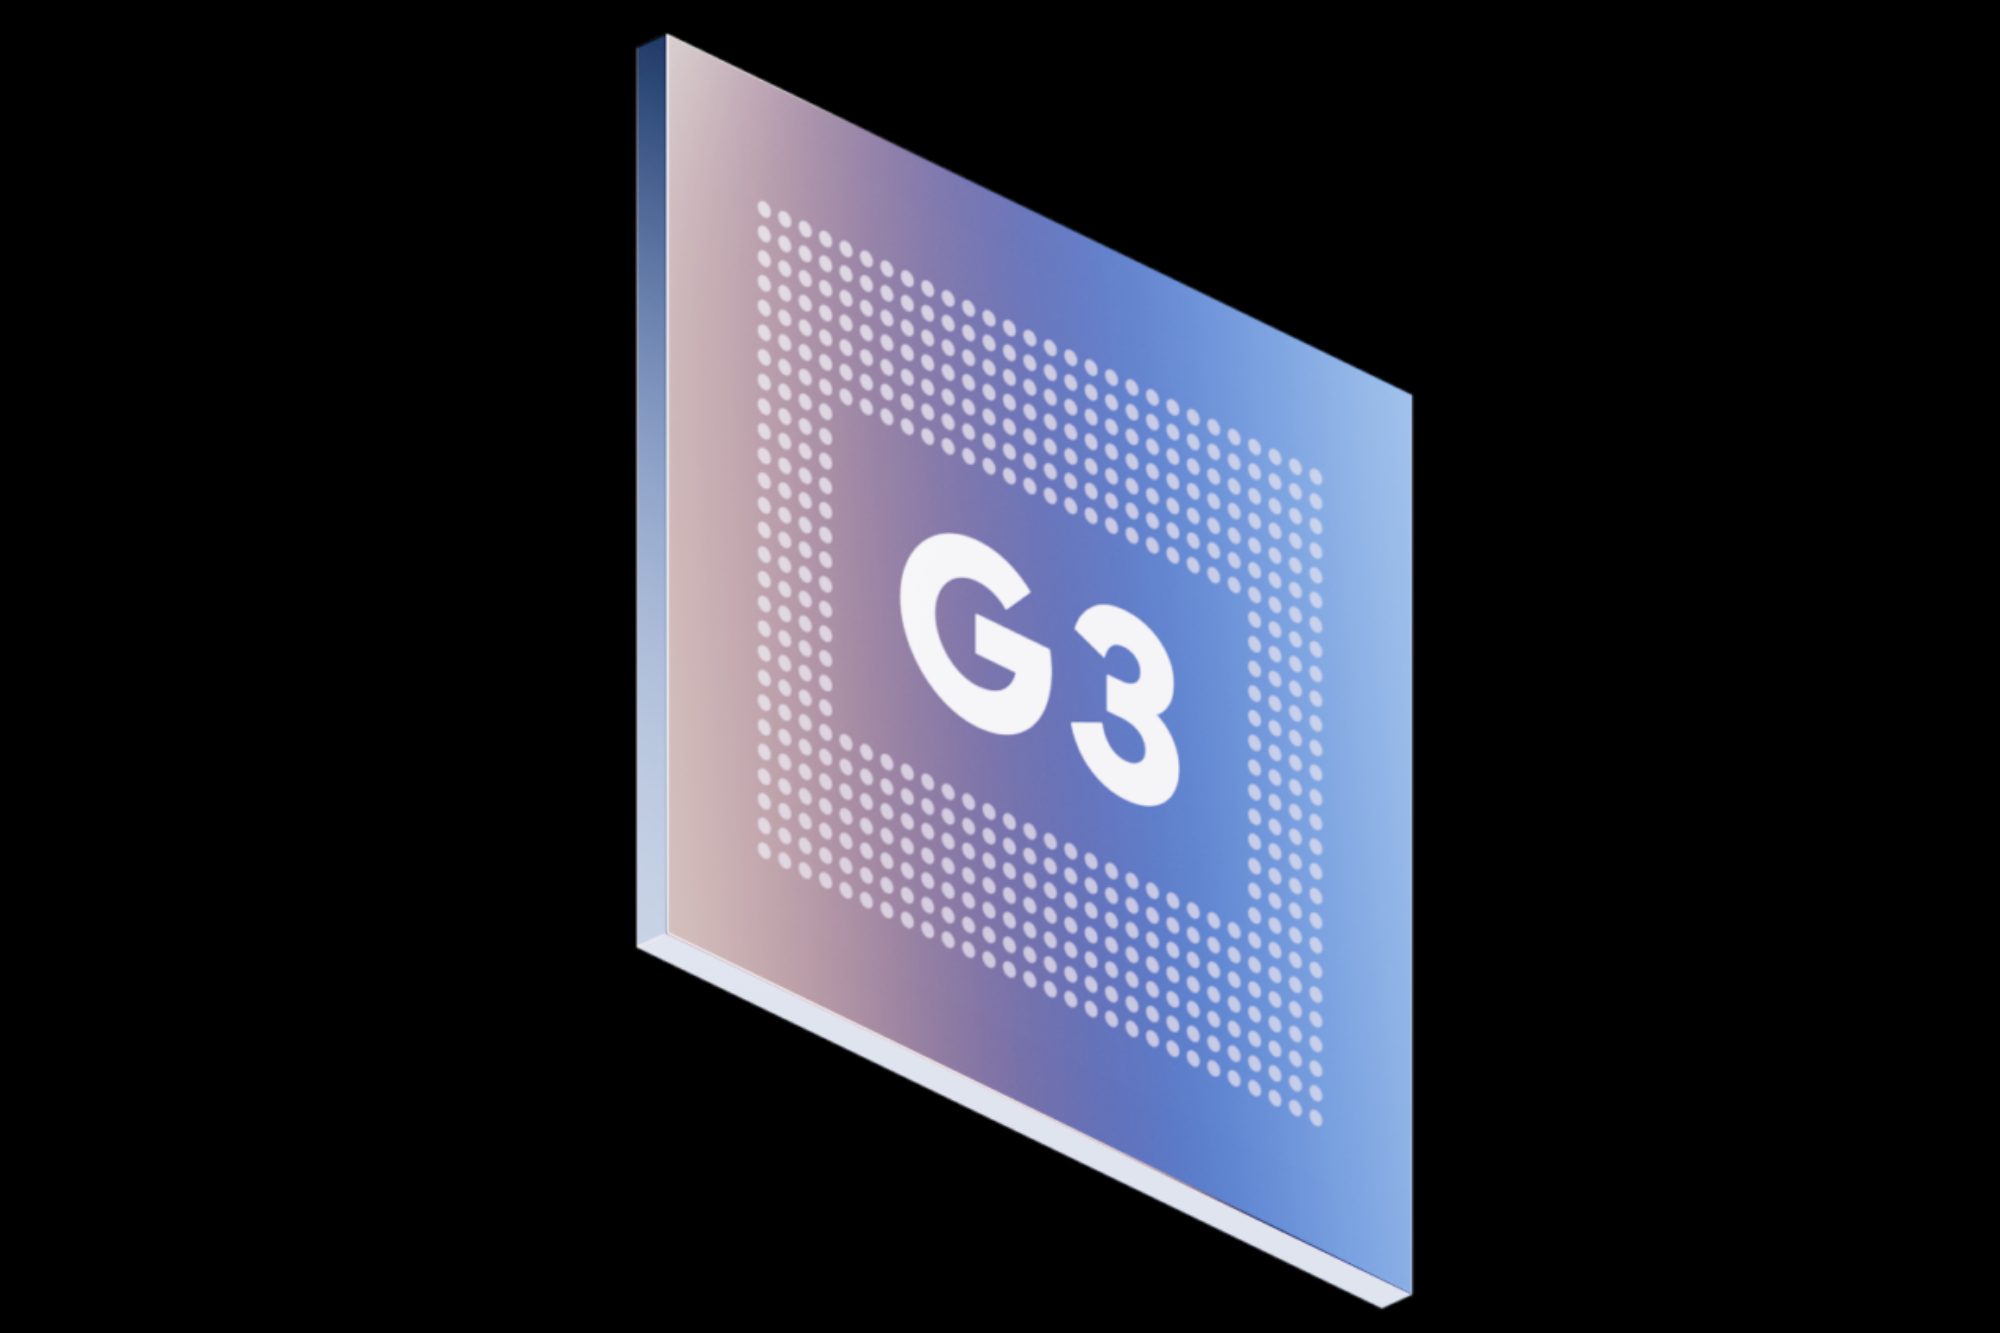 Google'ın Tensor G3 çipinin resmi ürün görseli.